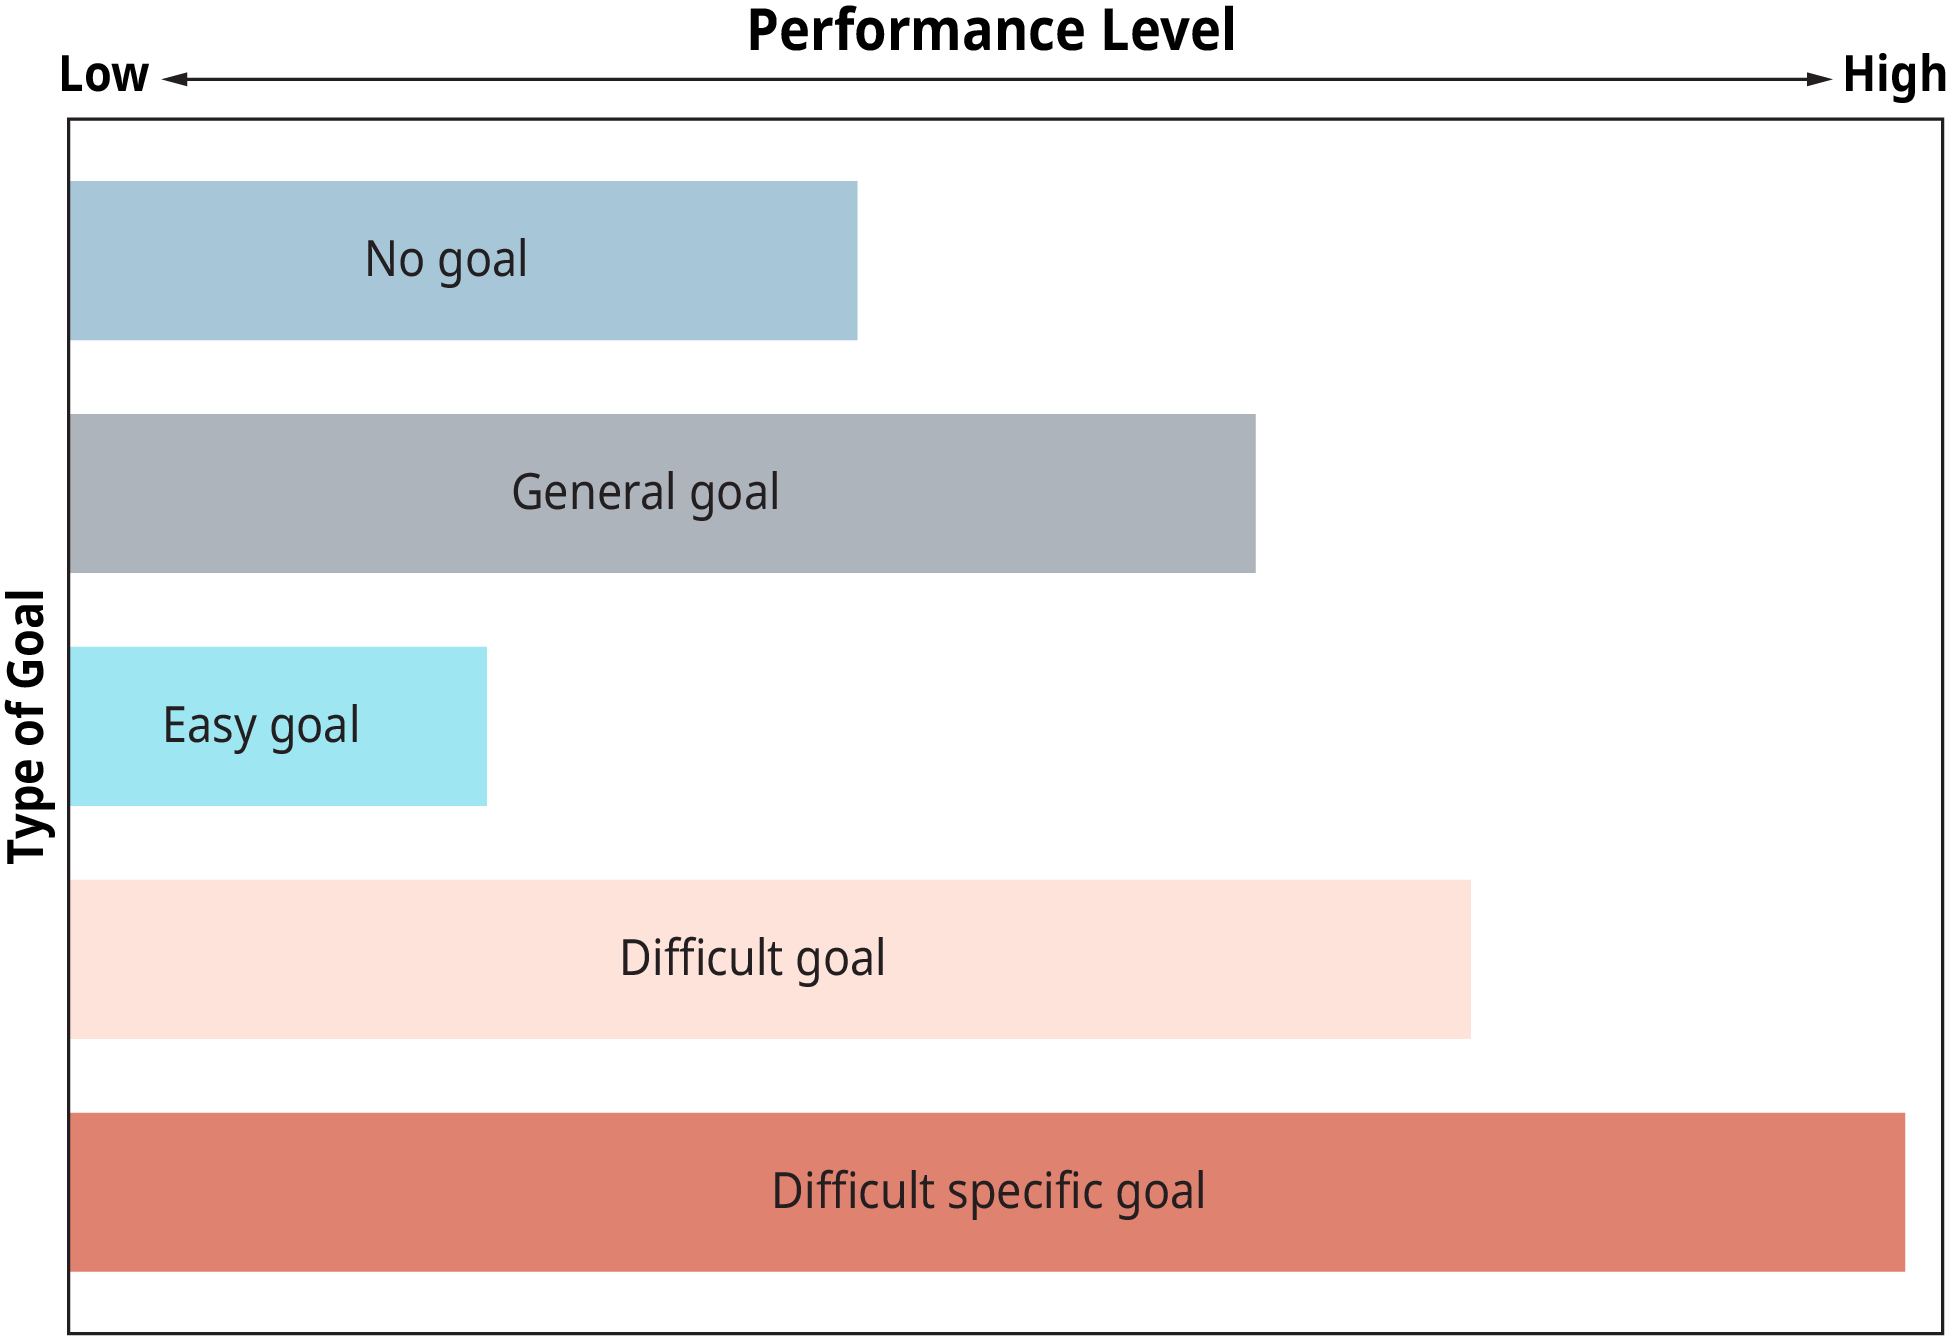 Une représentation graphique illustre les effets du type d'objectif sur la performance.